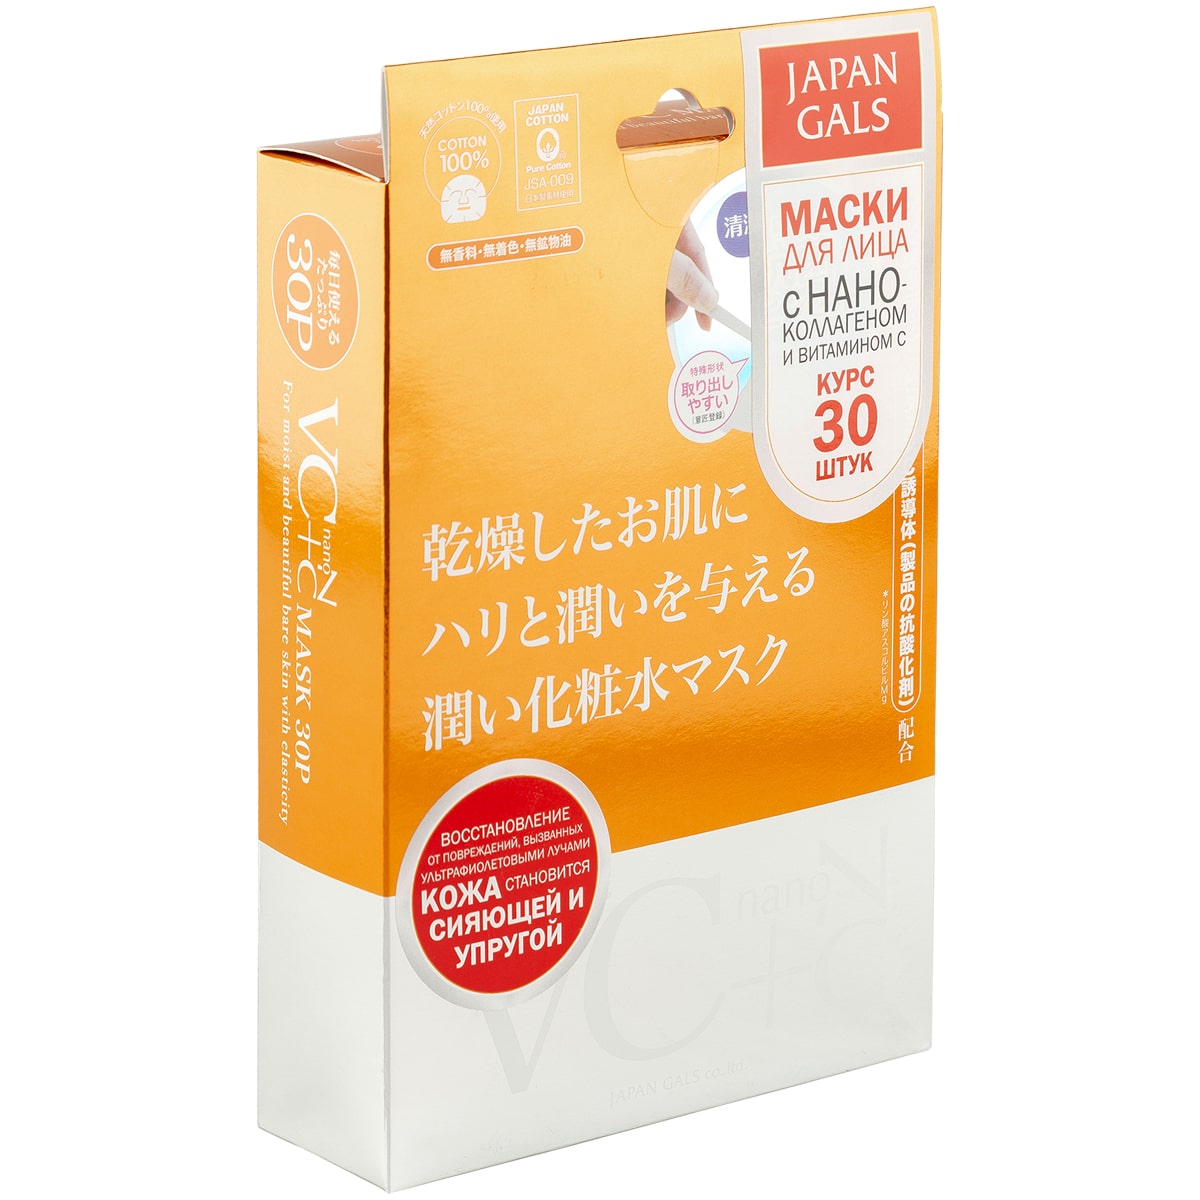 Japan Gals Маска Витамин С  нано-коллаген, 30 шт. фото